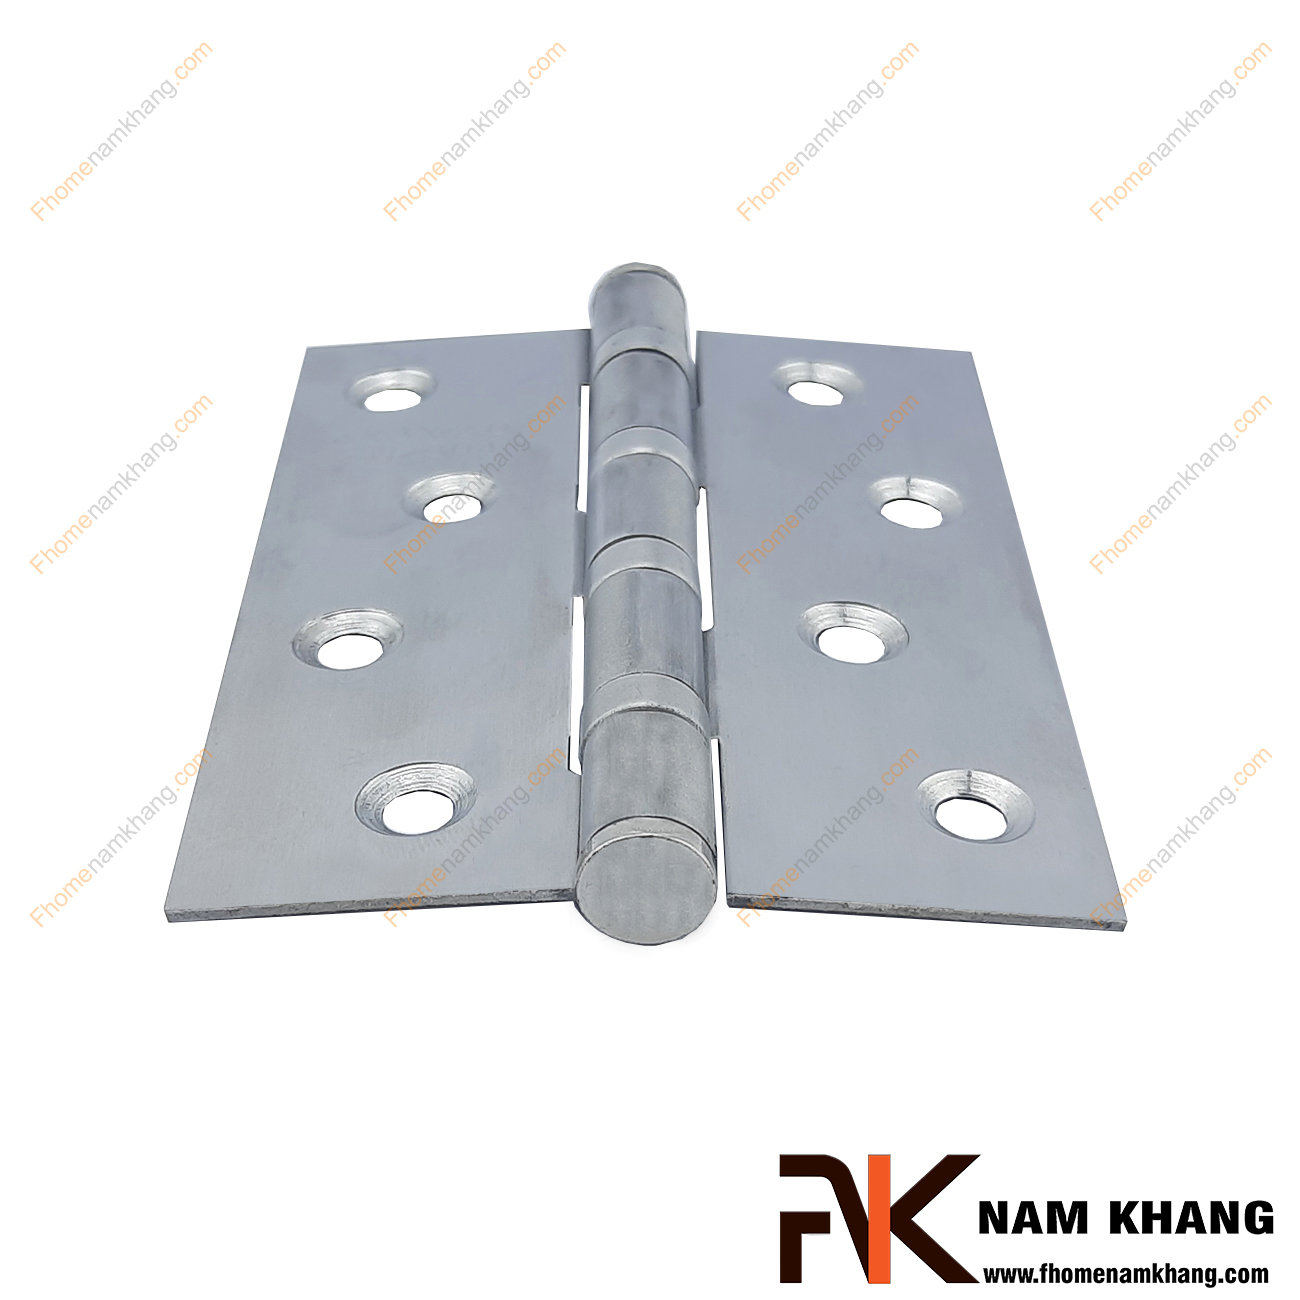 Bản lề cửa cao cấp màu hợp kim bóng NK307-10HK được sản xuất từ chất liệu cao cấp, là sản phẩm quan trọng khi lắp đặt các cánh cửa.